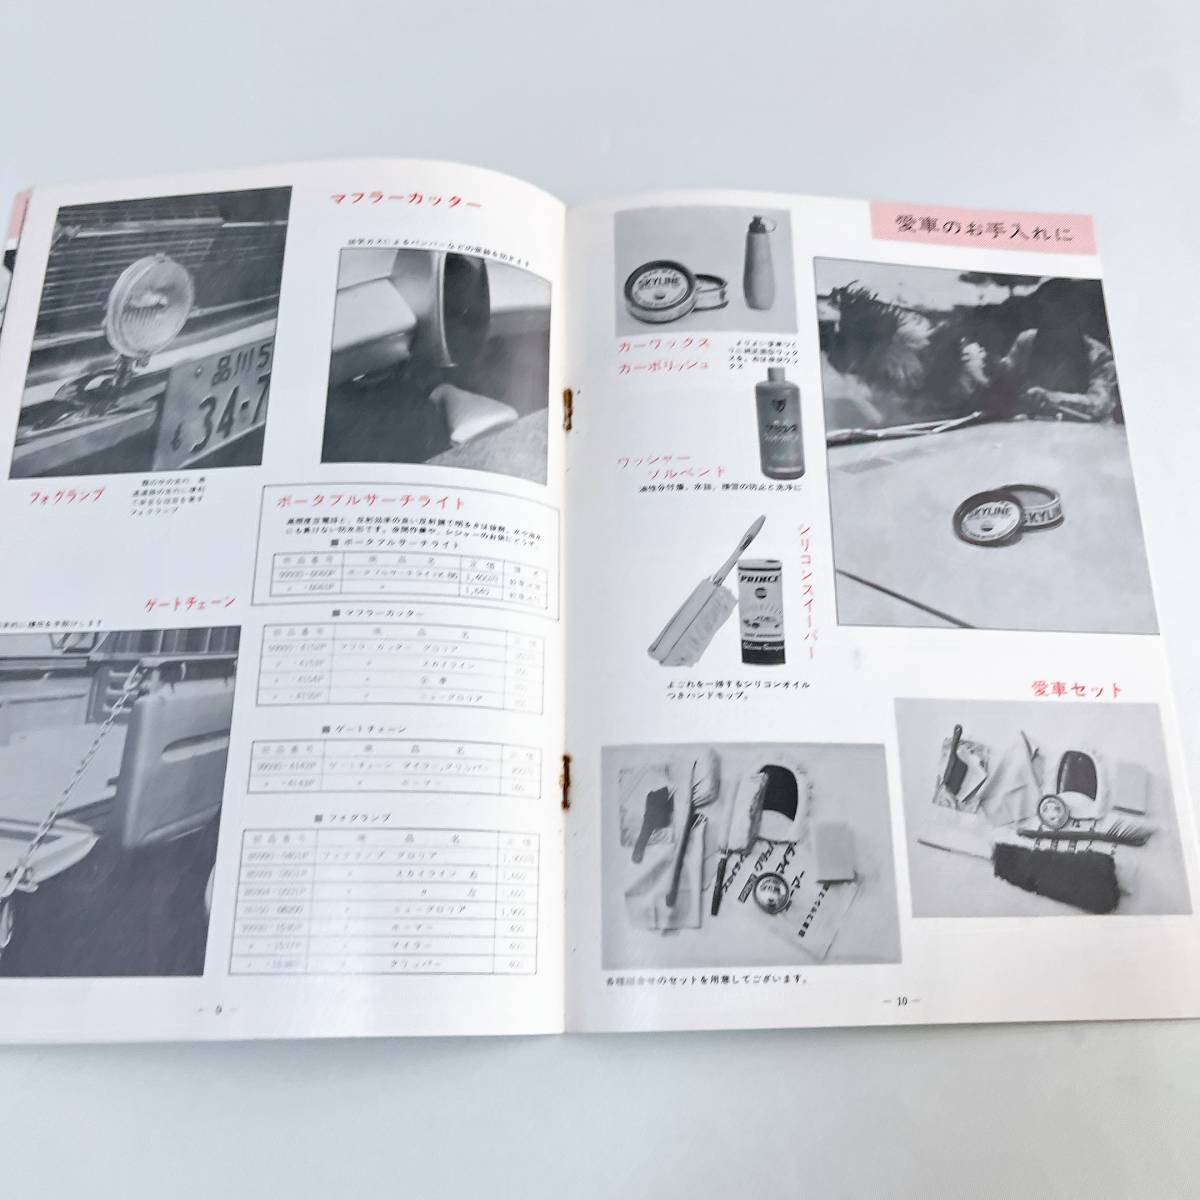  Nissan Prince оригинальный сопутствующие товары каталог 20 страница опция детали сопутствующие товары Prince 